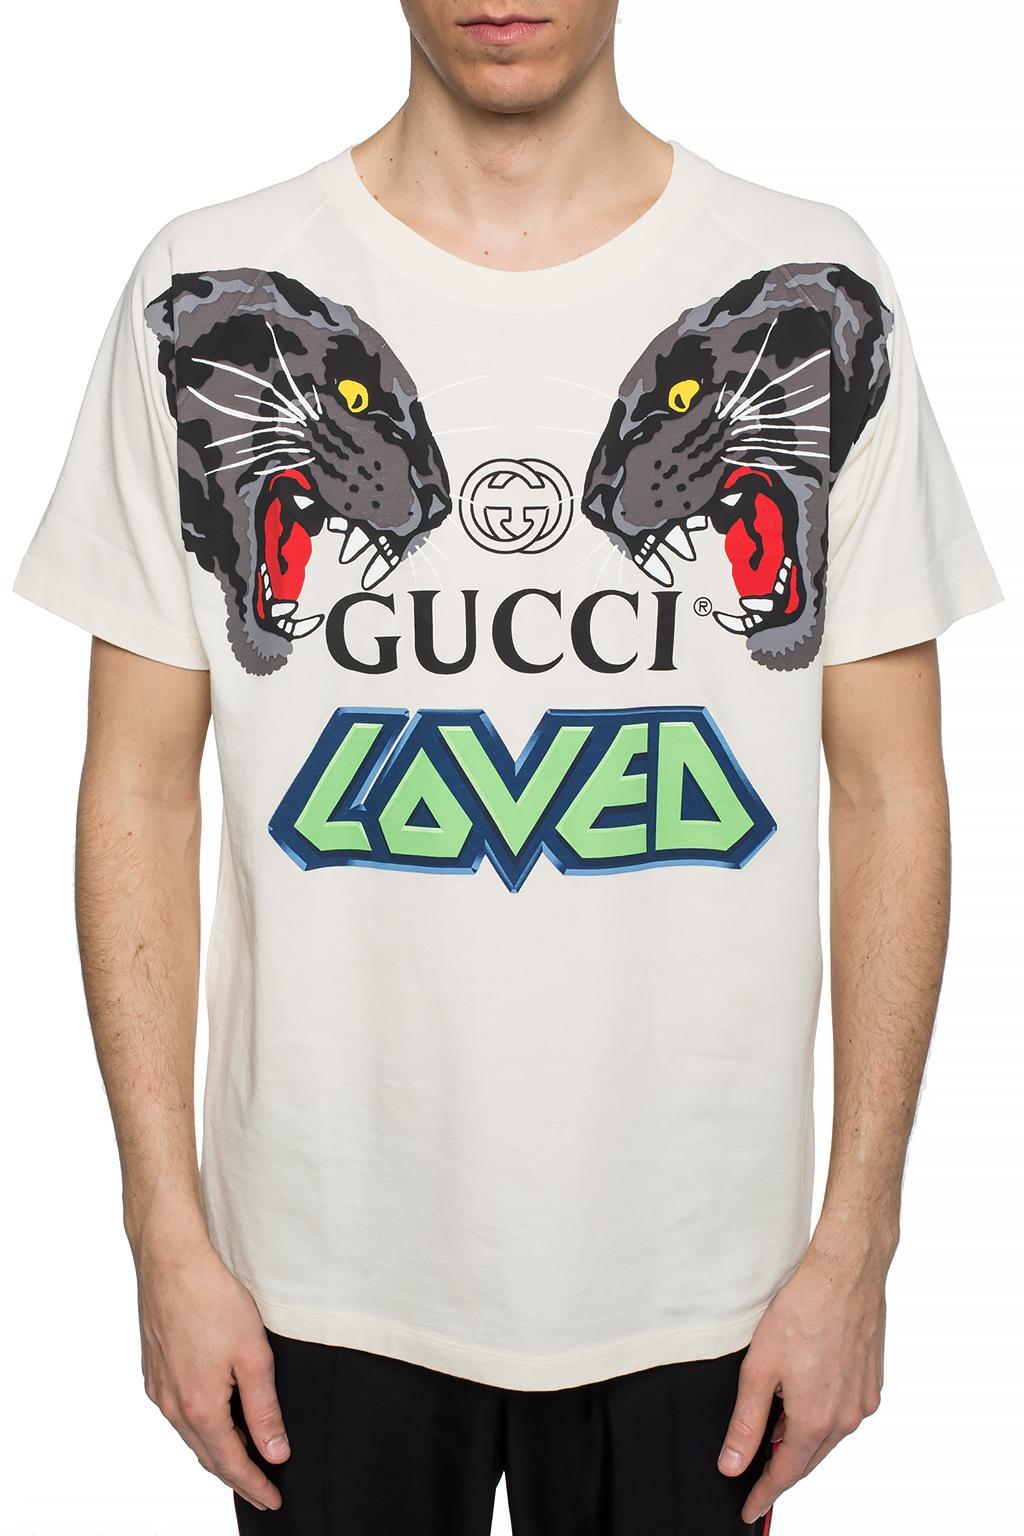 gucci loved tshirt